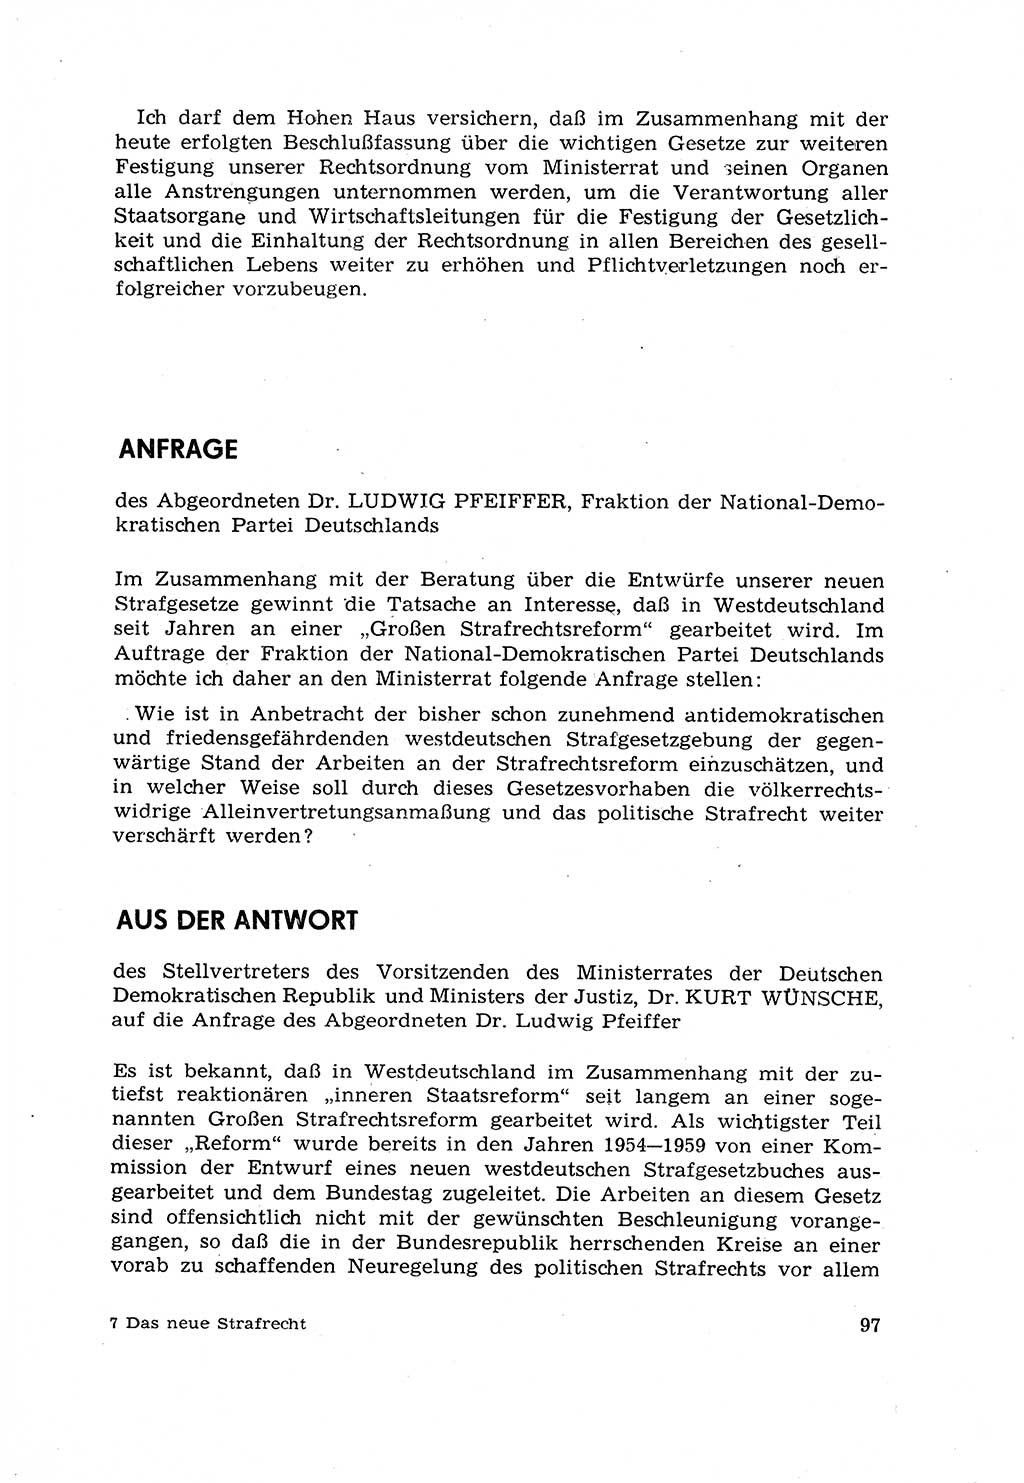 Strafrecht [Deutsche Demokratische Republik (DDR)] 1968, Seite 97 (Strafr. DDR 1968, S. 97)